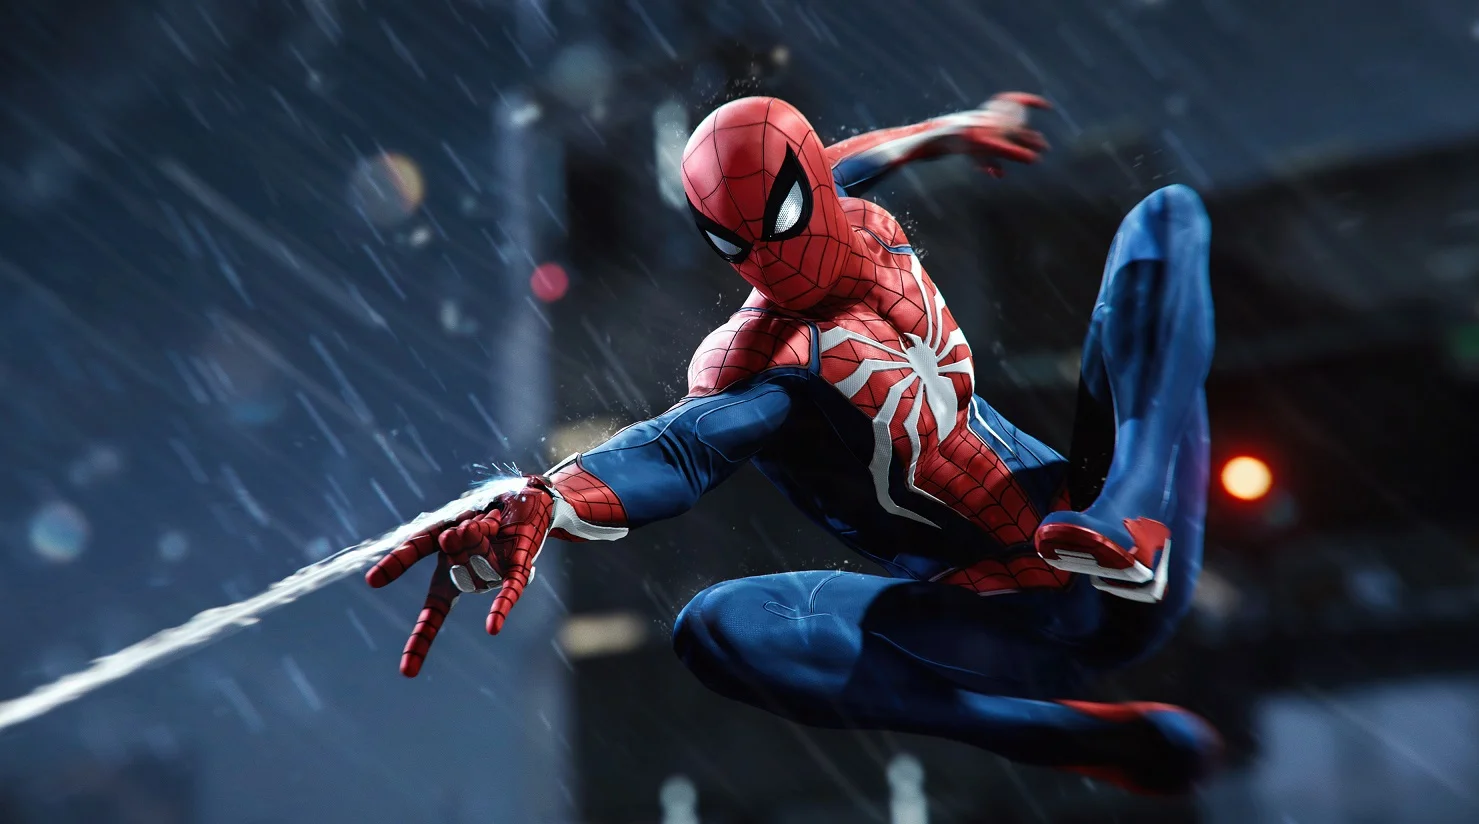 Spider-Man — одна из лучших игр для PS4 в 2018 году. Мы написали про нее огромное количество статей, собрали массу забавных связанных с ней гифок и подготовили много материалов, которые точно пригодятся тем, кто в Spider-Man еще сыграть не успел. И все это теперь — в одном удобном хабе.